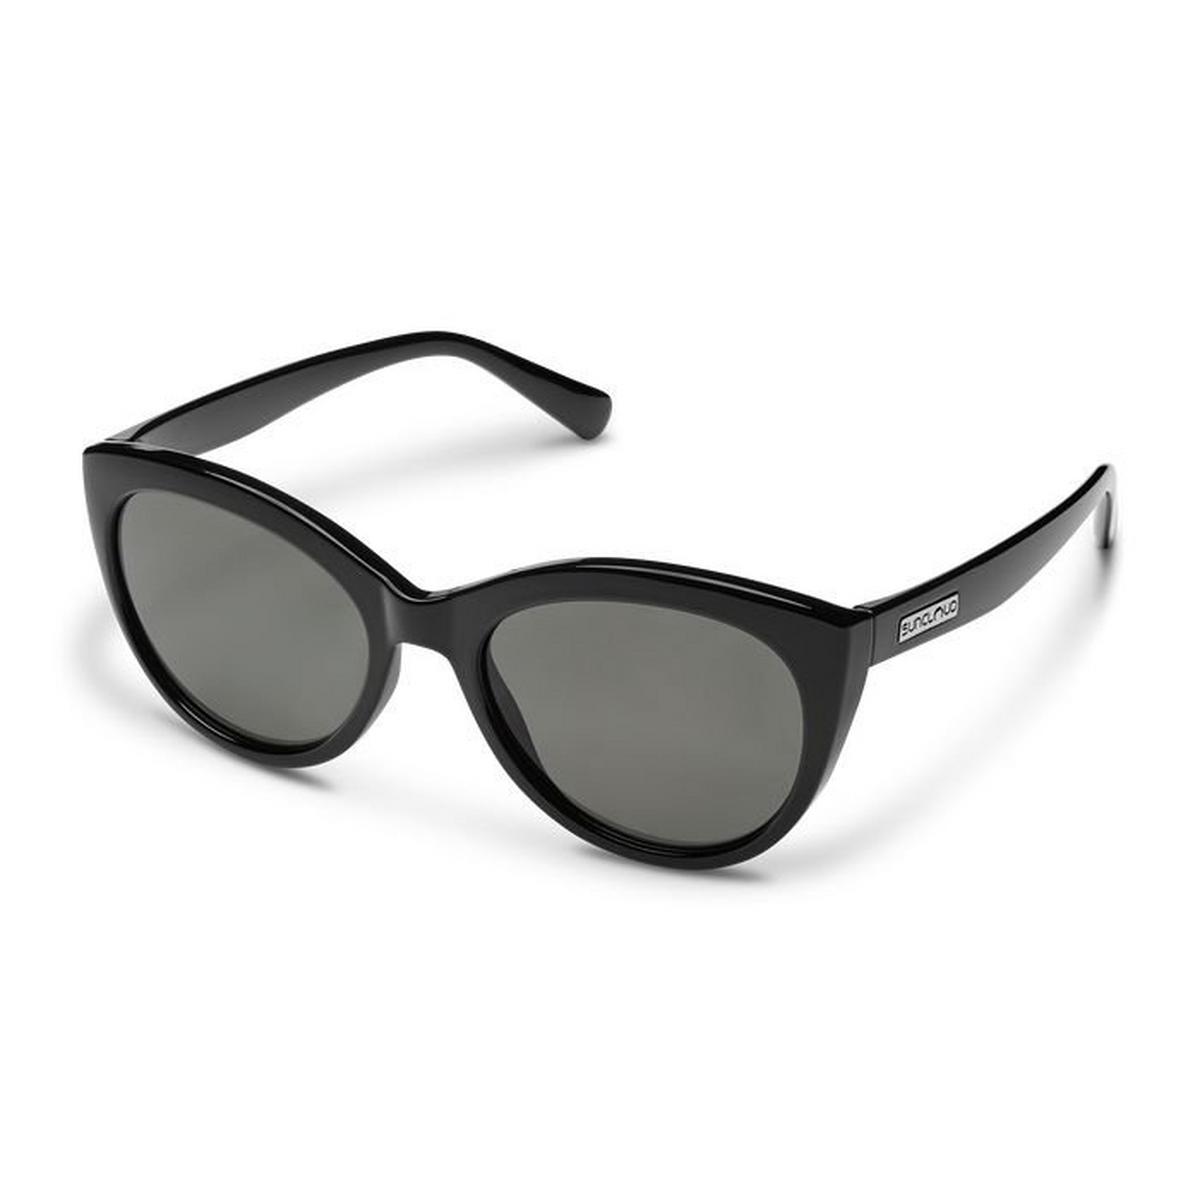 Cityscape Sunglasses